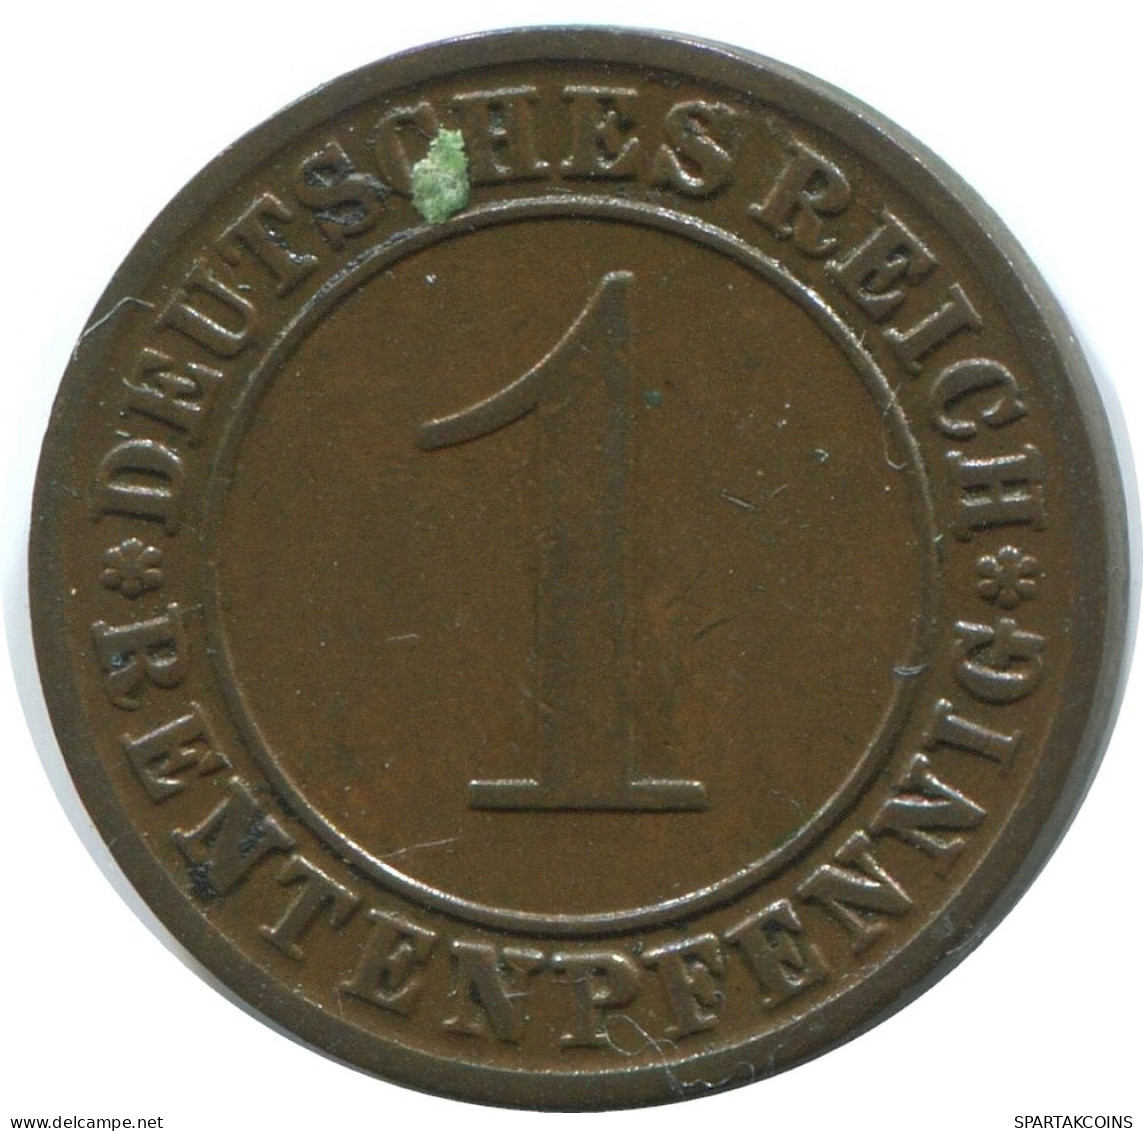 1 RENTENPFENNIG 1924 A GERMANY Coin #AE199.U - 1 Rentenpfennig & 1 Reichspfennig